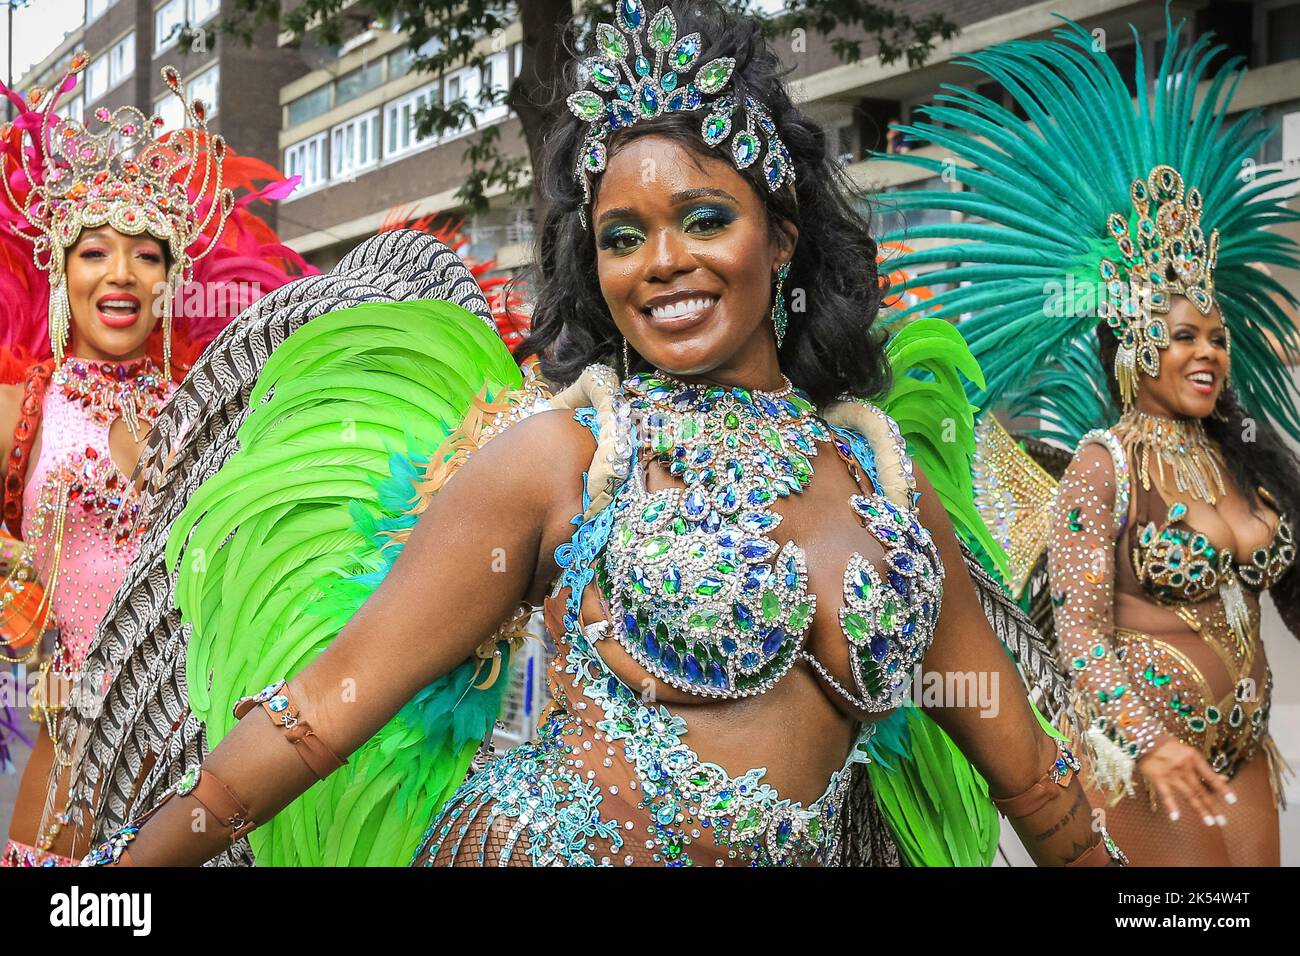 Danseuse de samba sourit en costume étincelant, Notting Hill Carnival, Londres, Royaume-Uni Banque D'Images